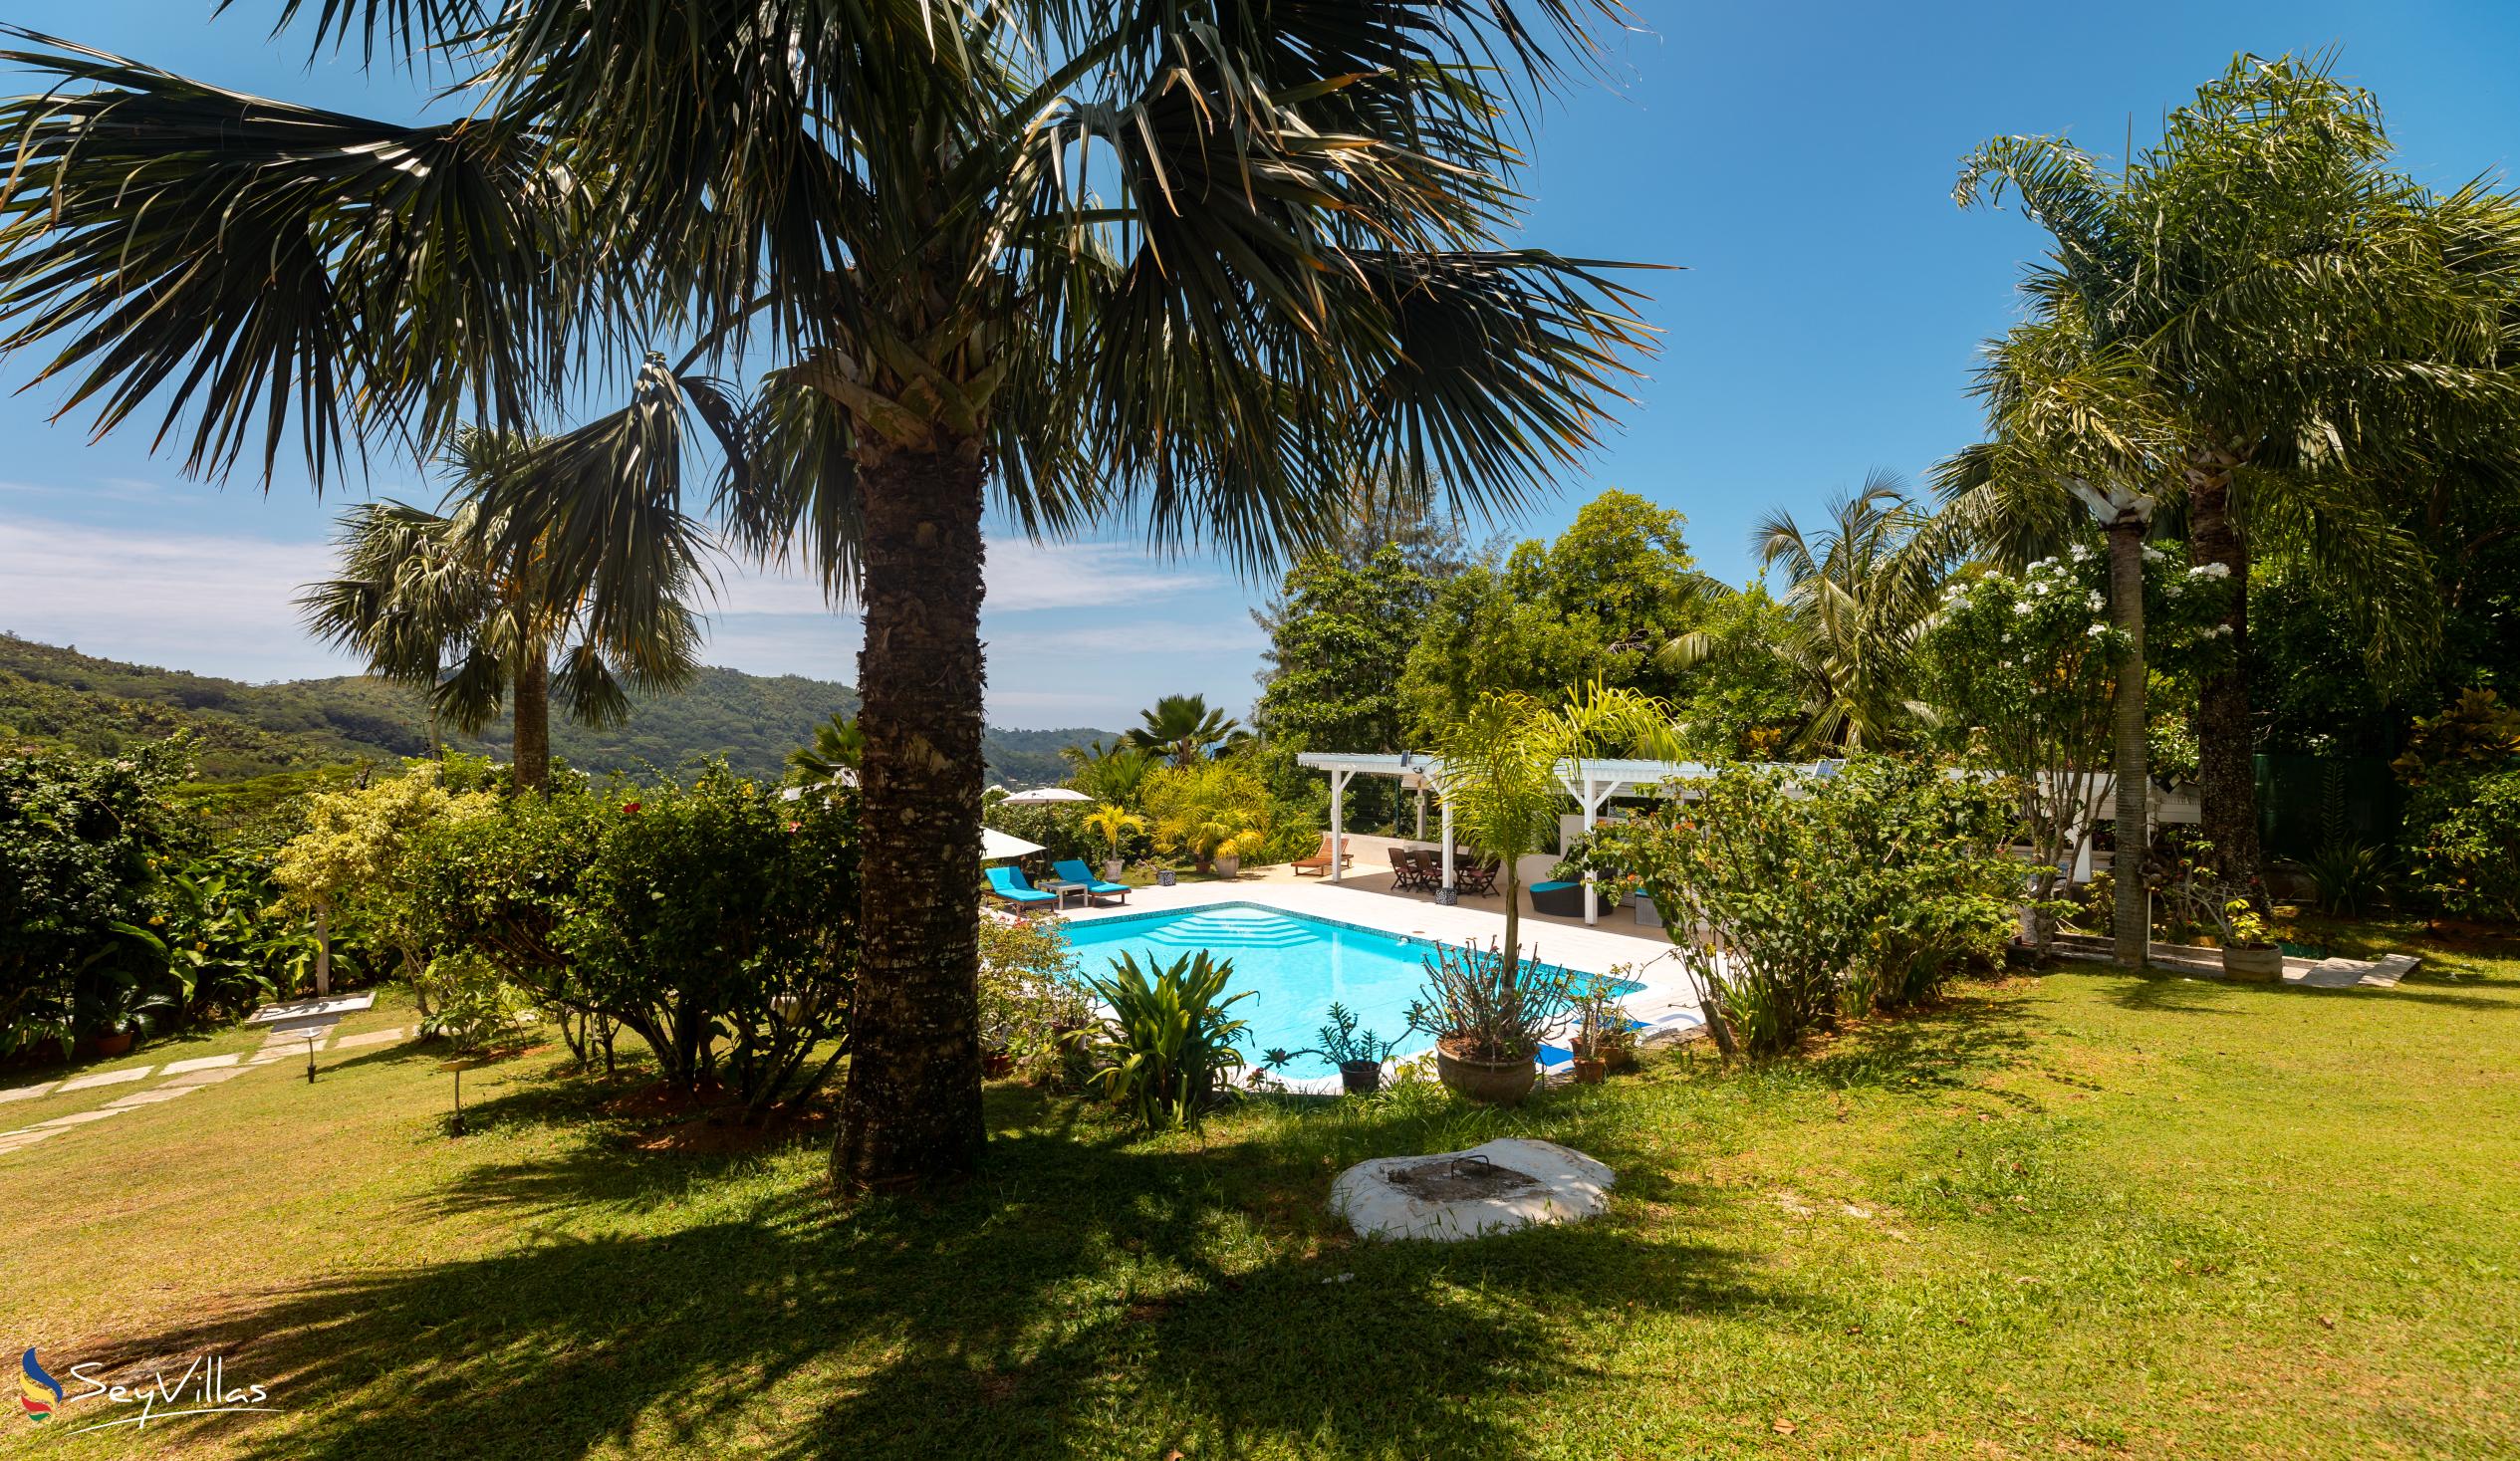 Foto 13: Residence Monte Cristo - Aussenbereich - Mahé (Seychellen)